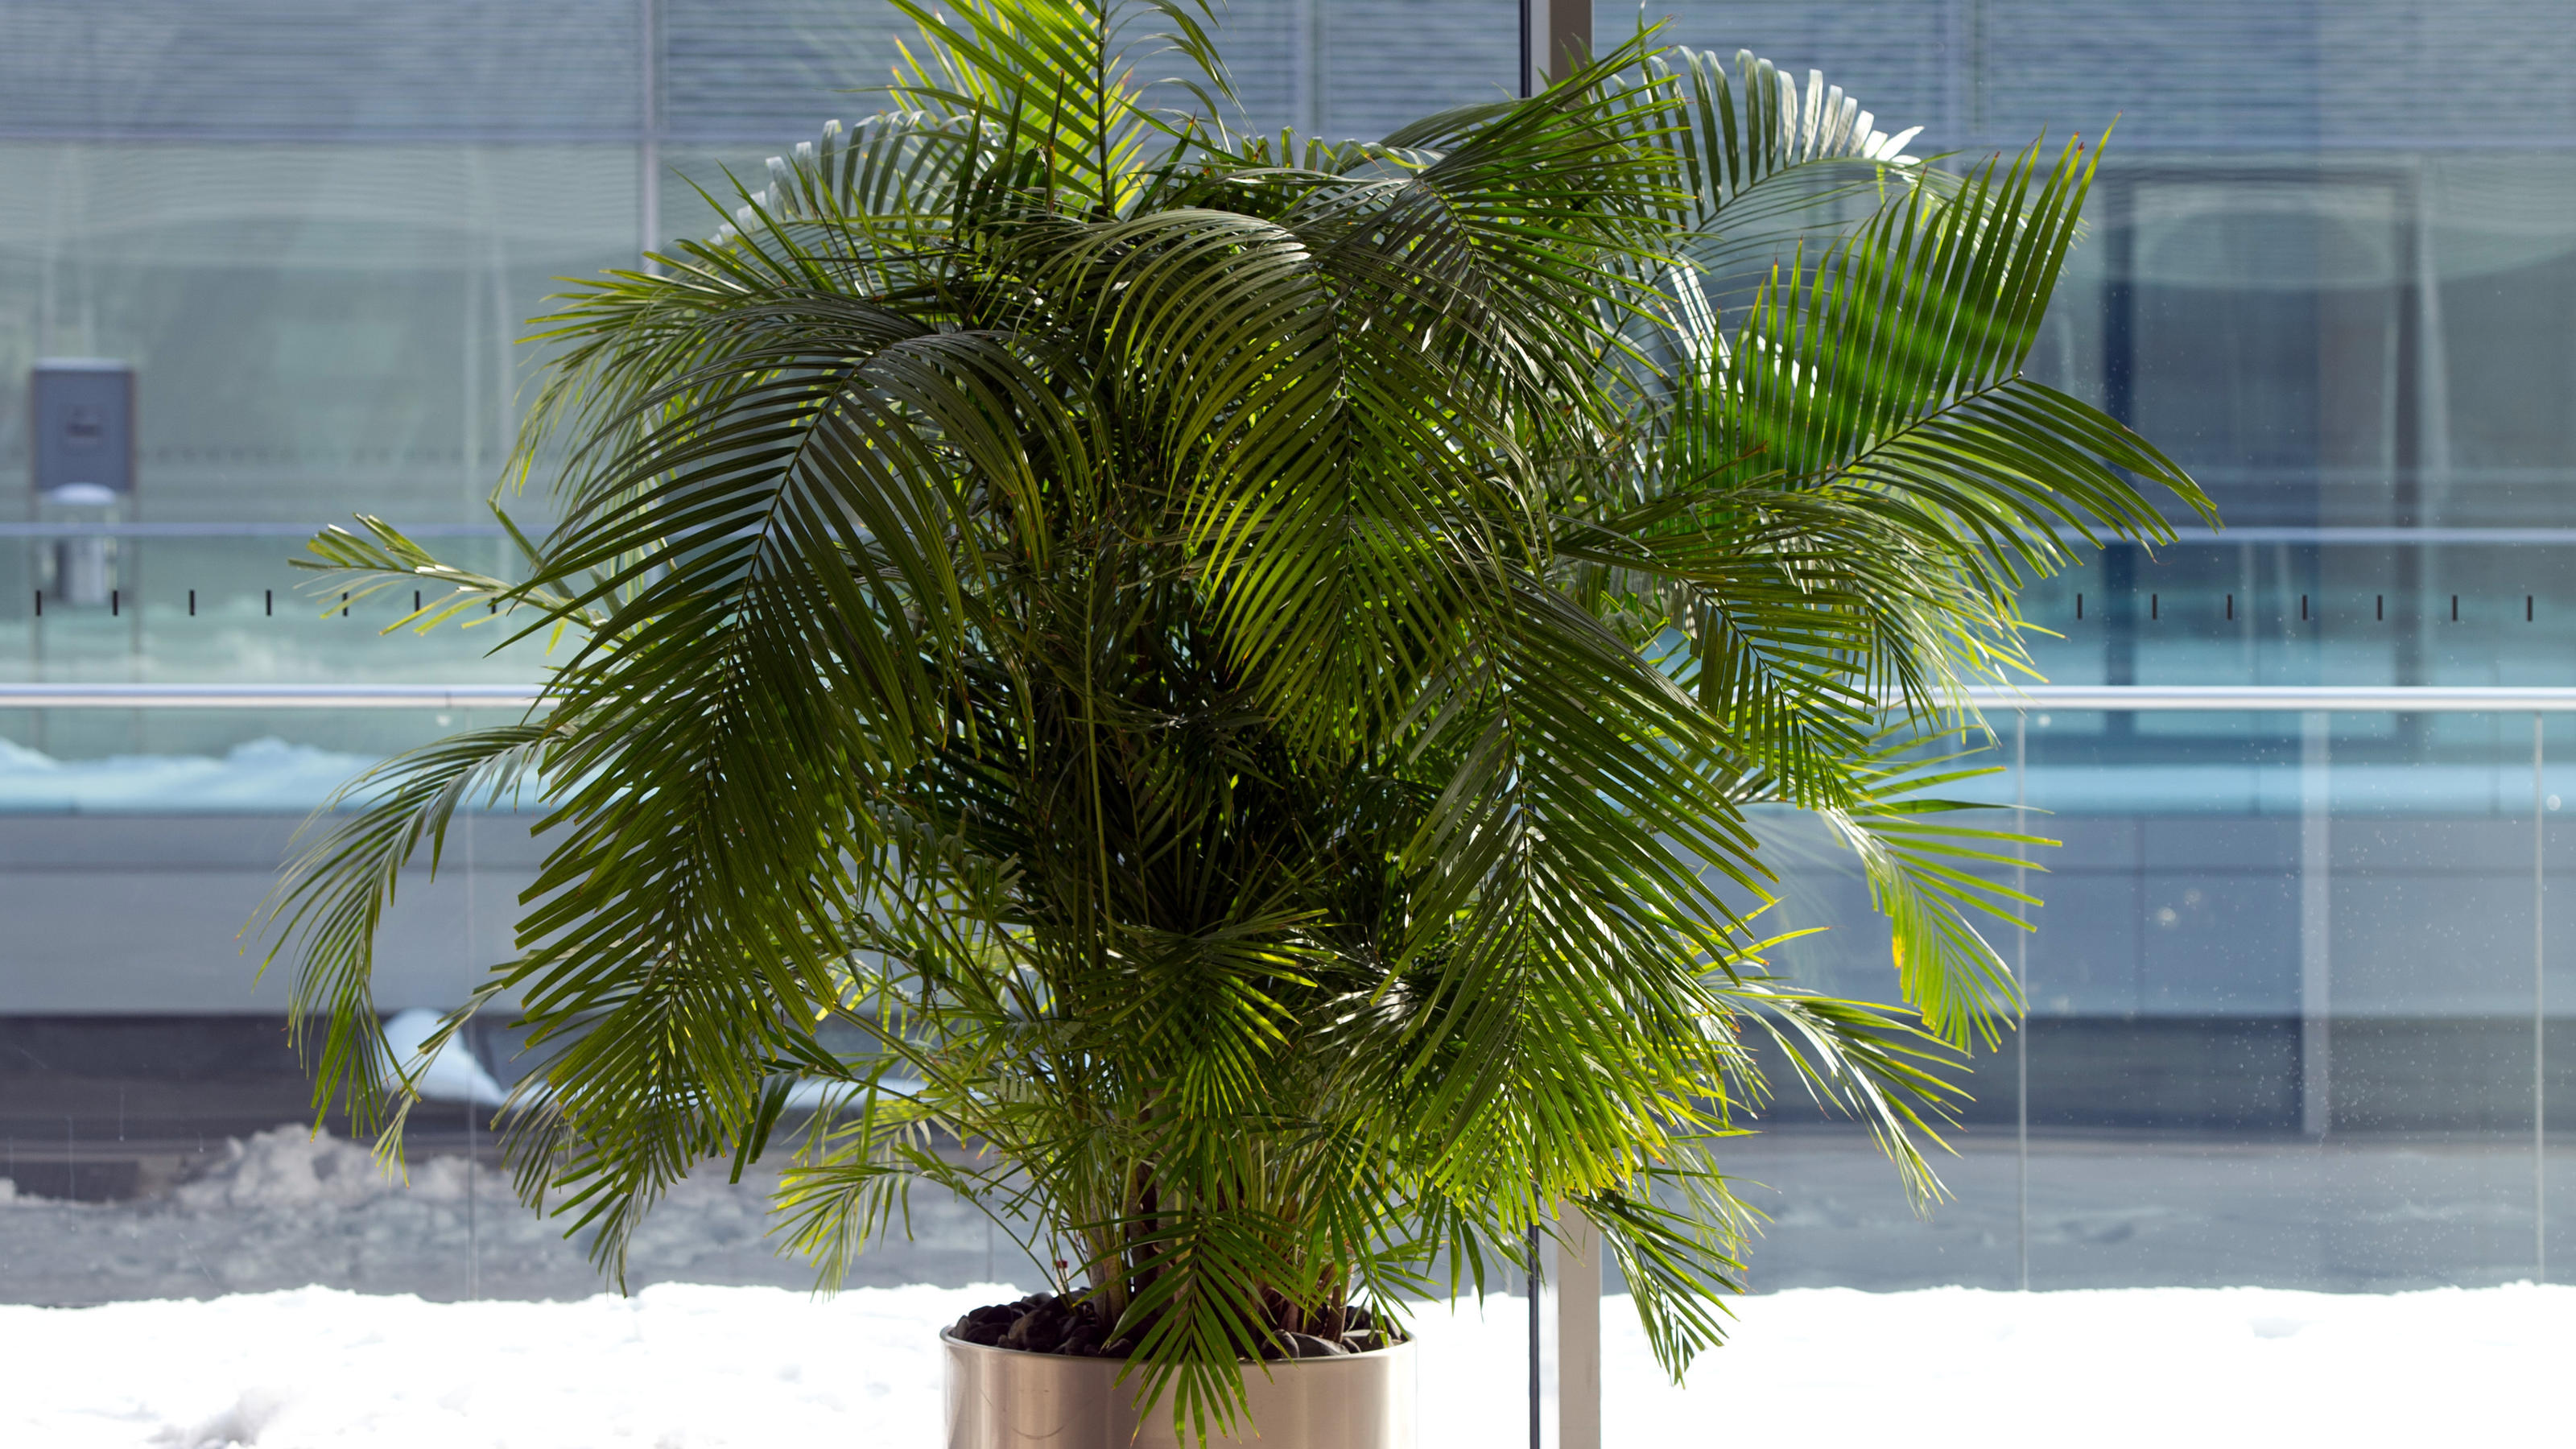 Eine Areca Palme (Dypsis lutescens) oder auch Butterfly Palm am Fenster